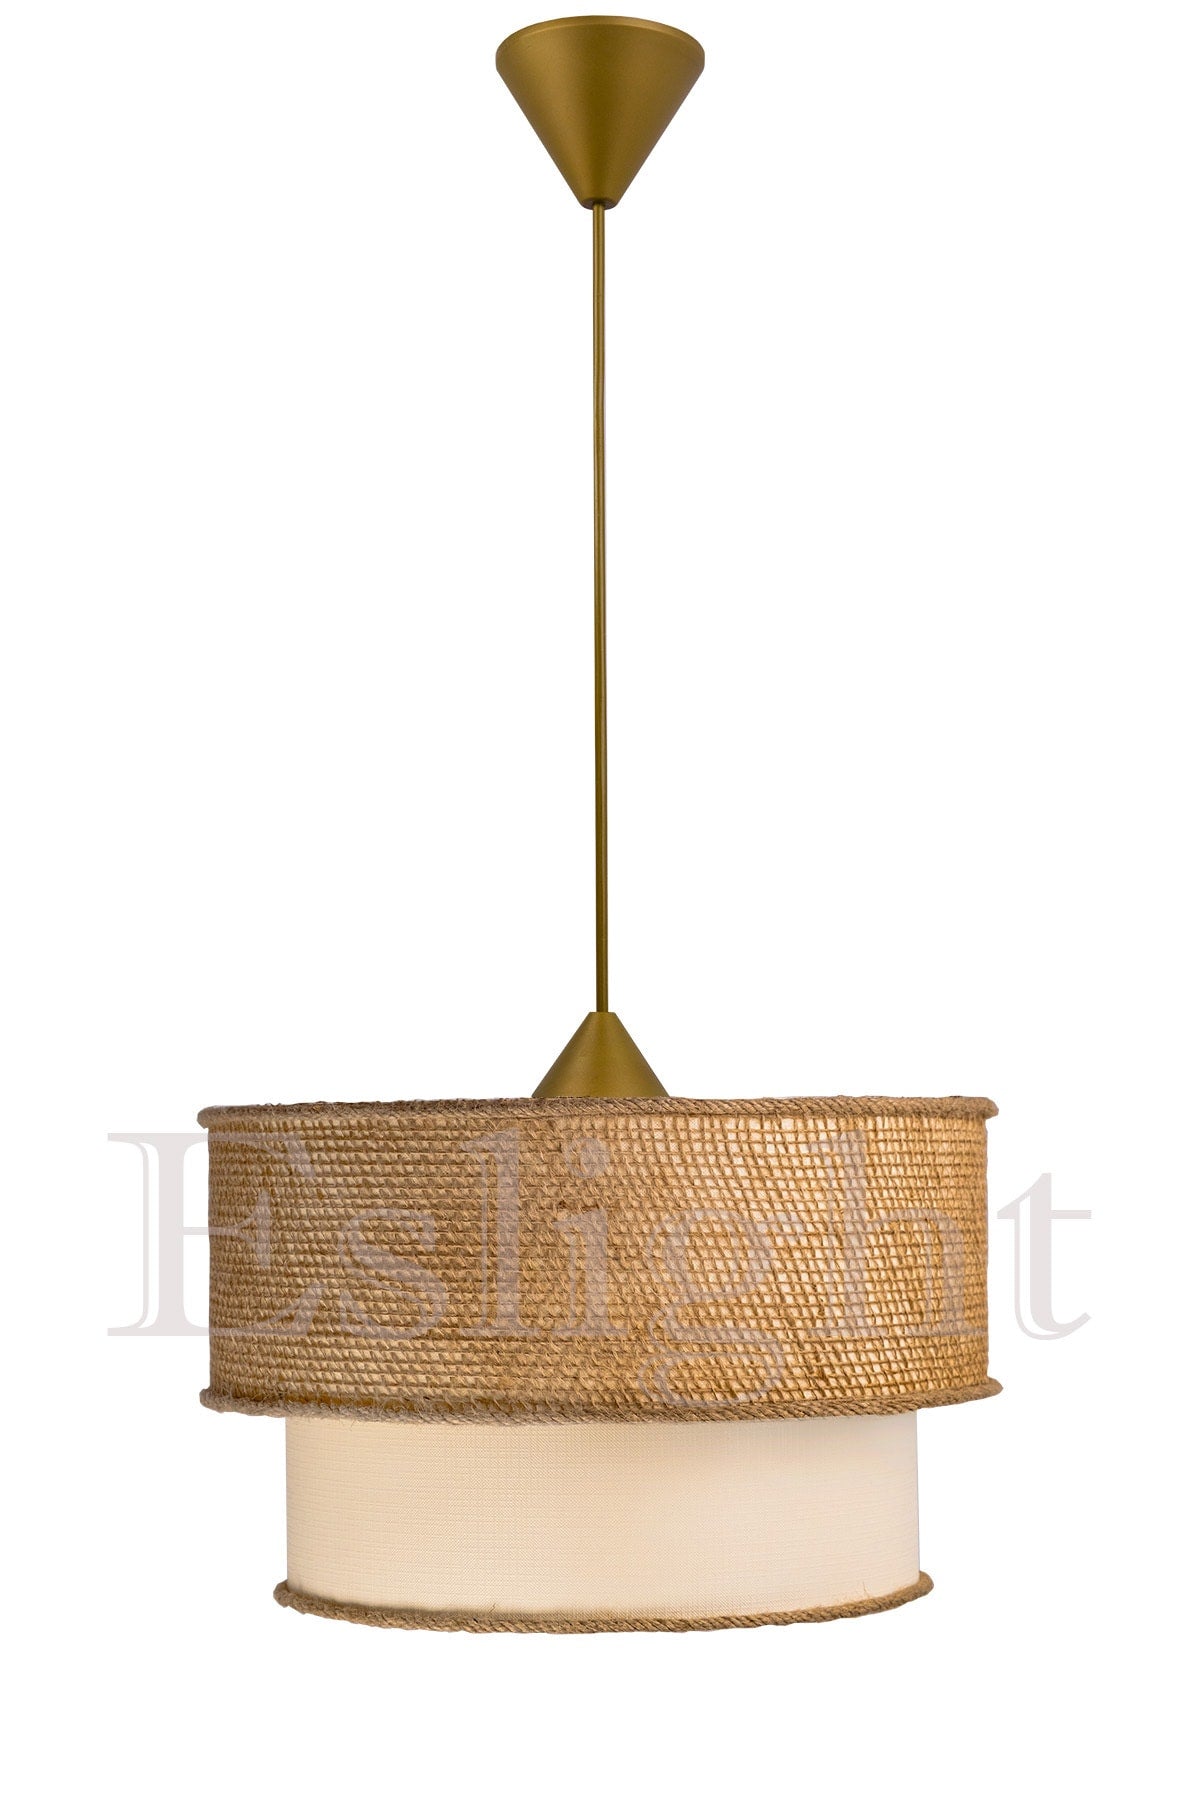 Redro Wicker Single Pendant Lamp Chandelier Eh02